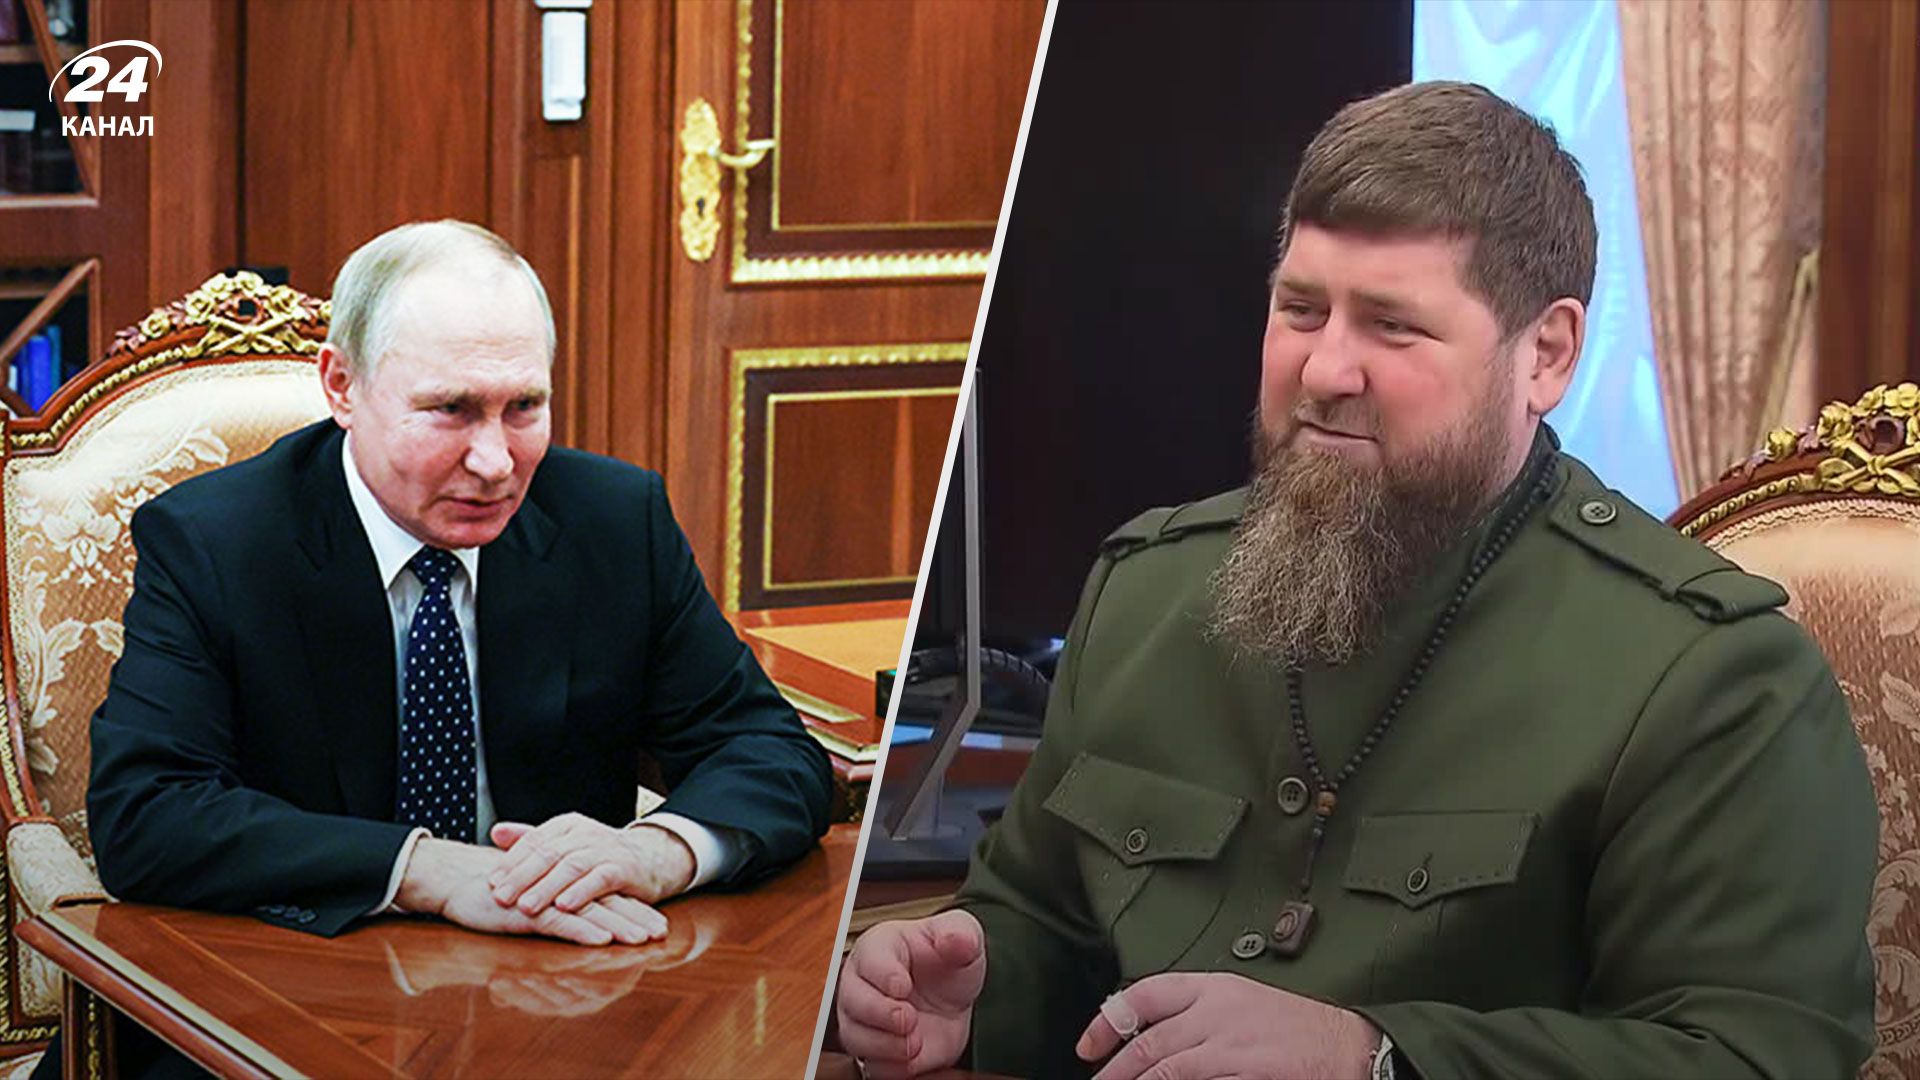 Рамзан Кадыров – когда была сделана запись запись встречи с Путиным